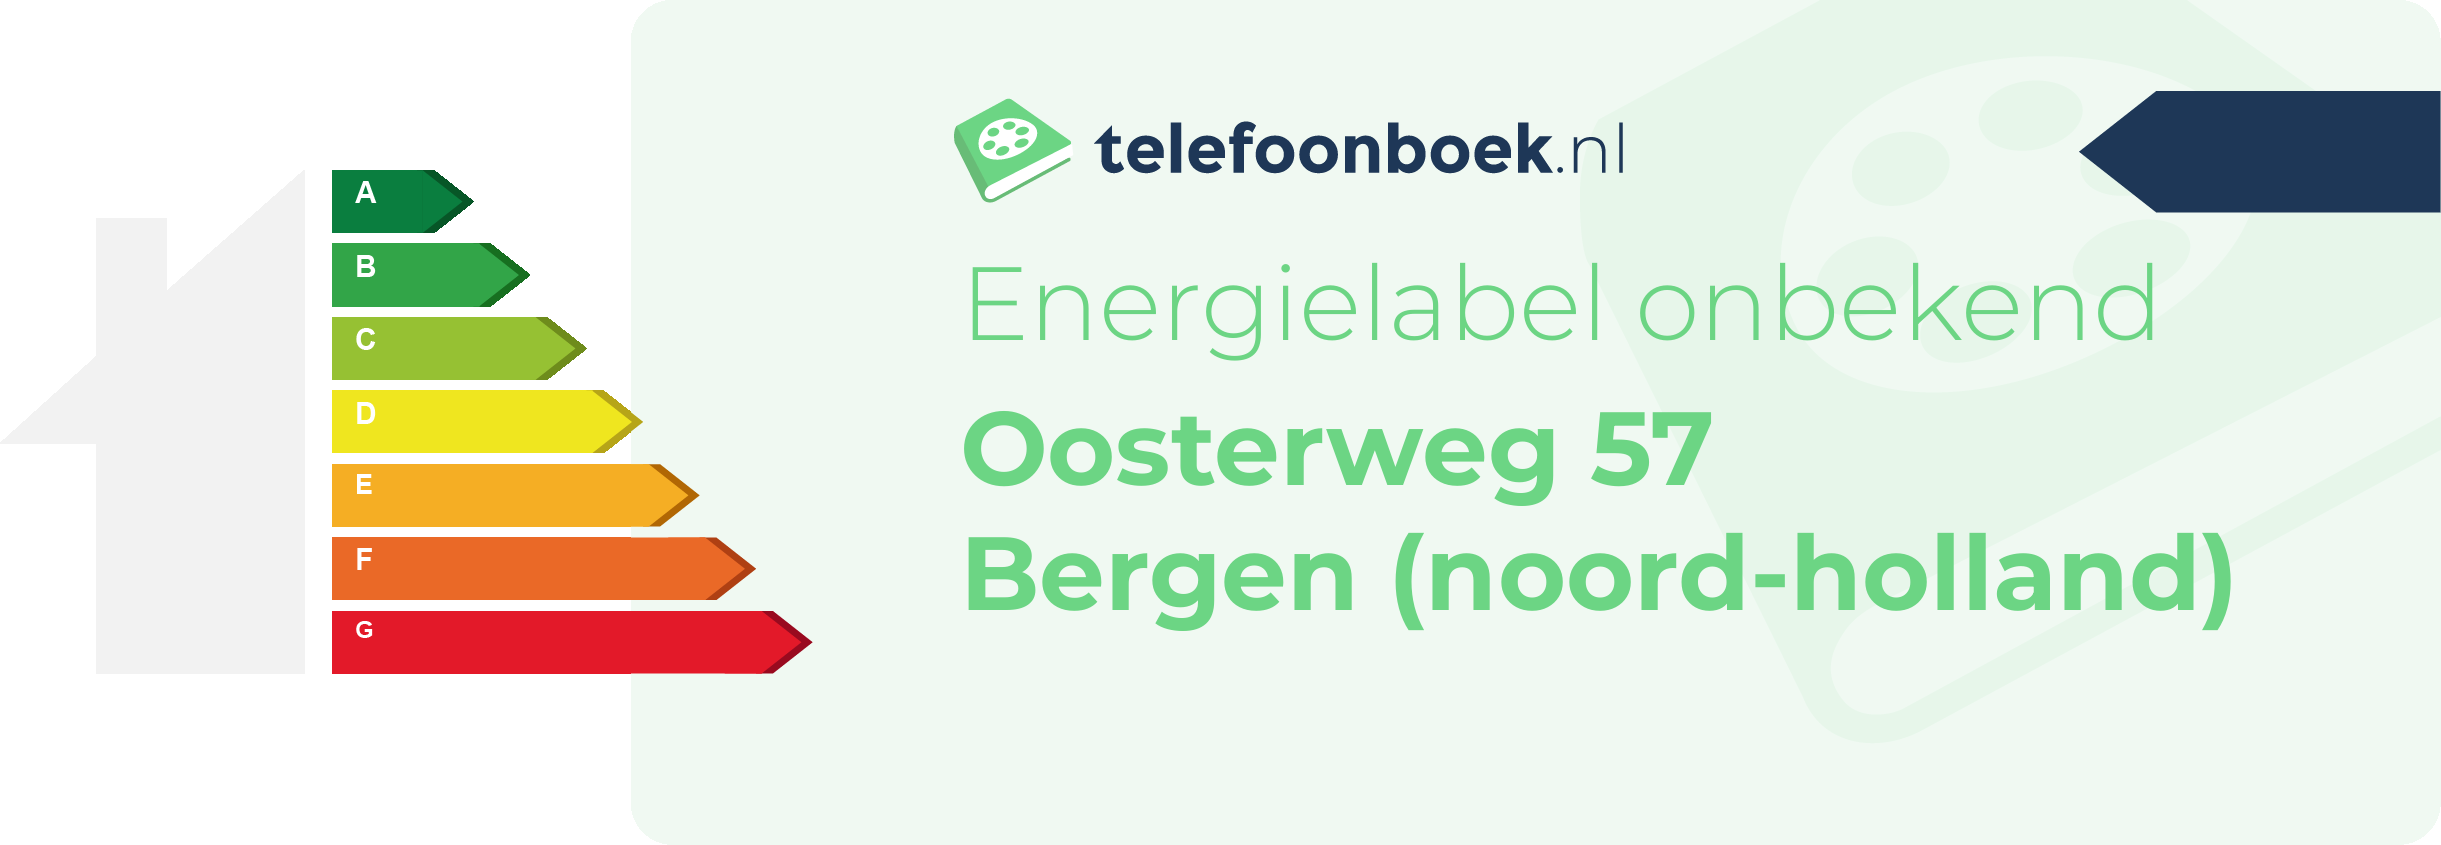 Energielabel Oosterweg 57 Bergen (Noord-Holland)